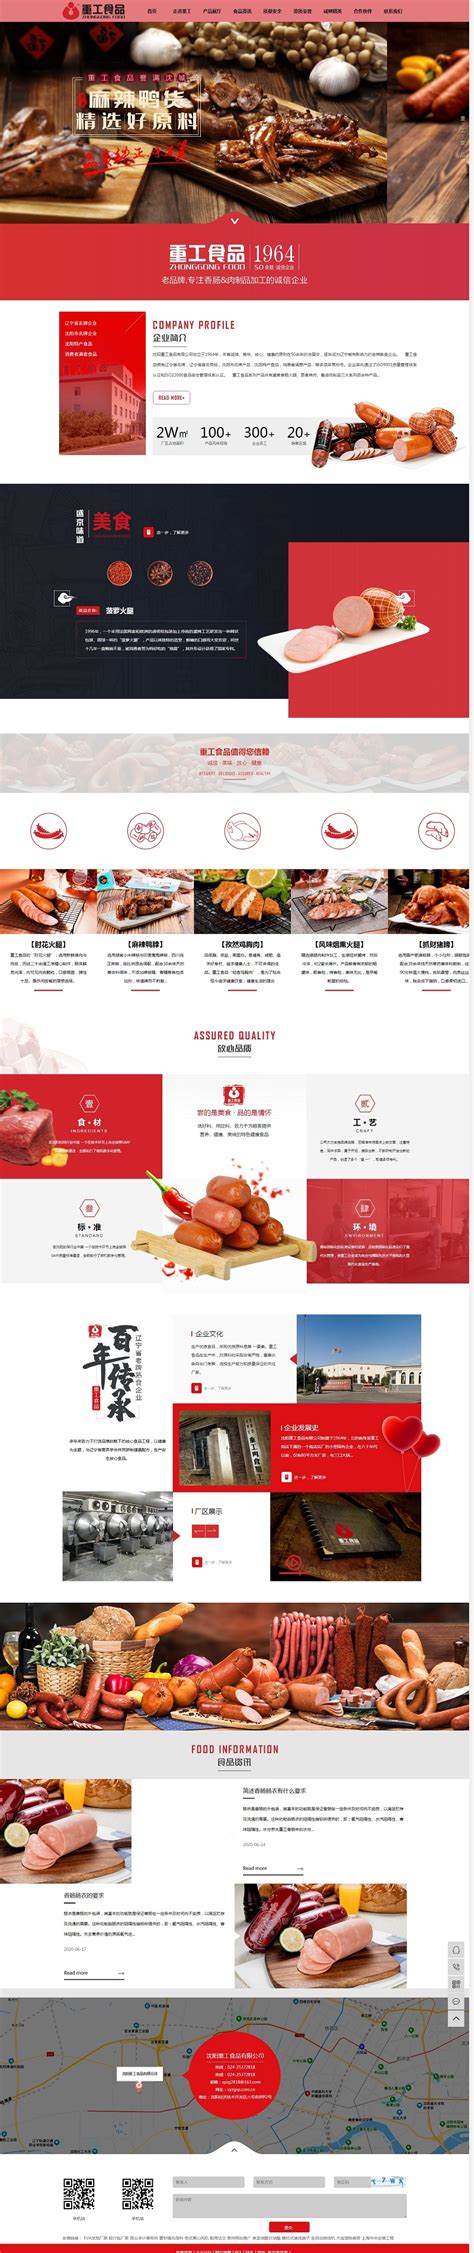 凯鸿沈阳网站建设制作公司为老品牌熟食企业重工食品制作的企业官网上线啦